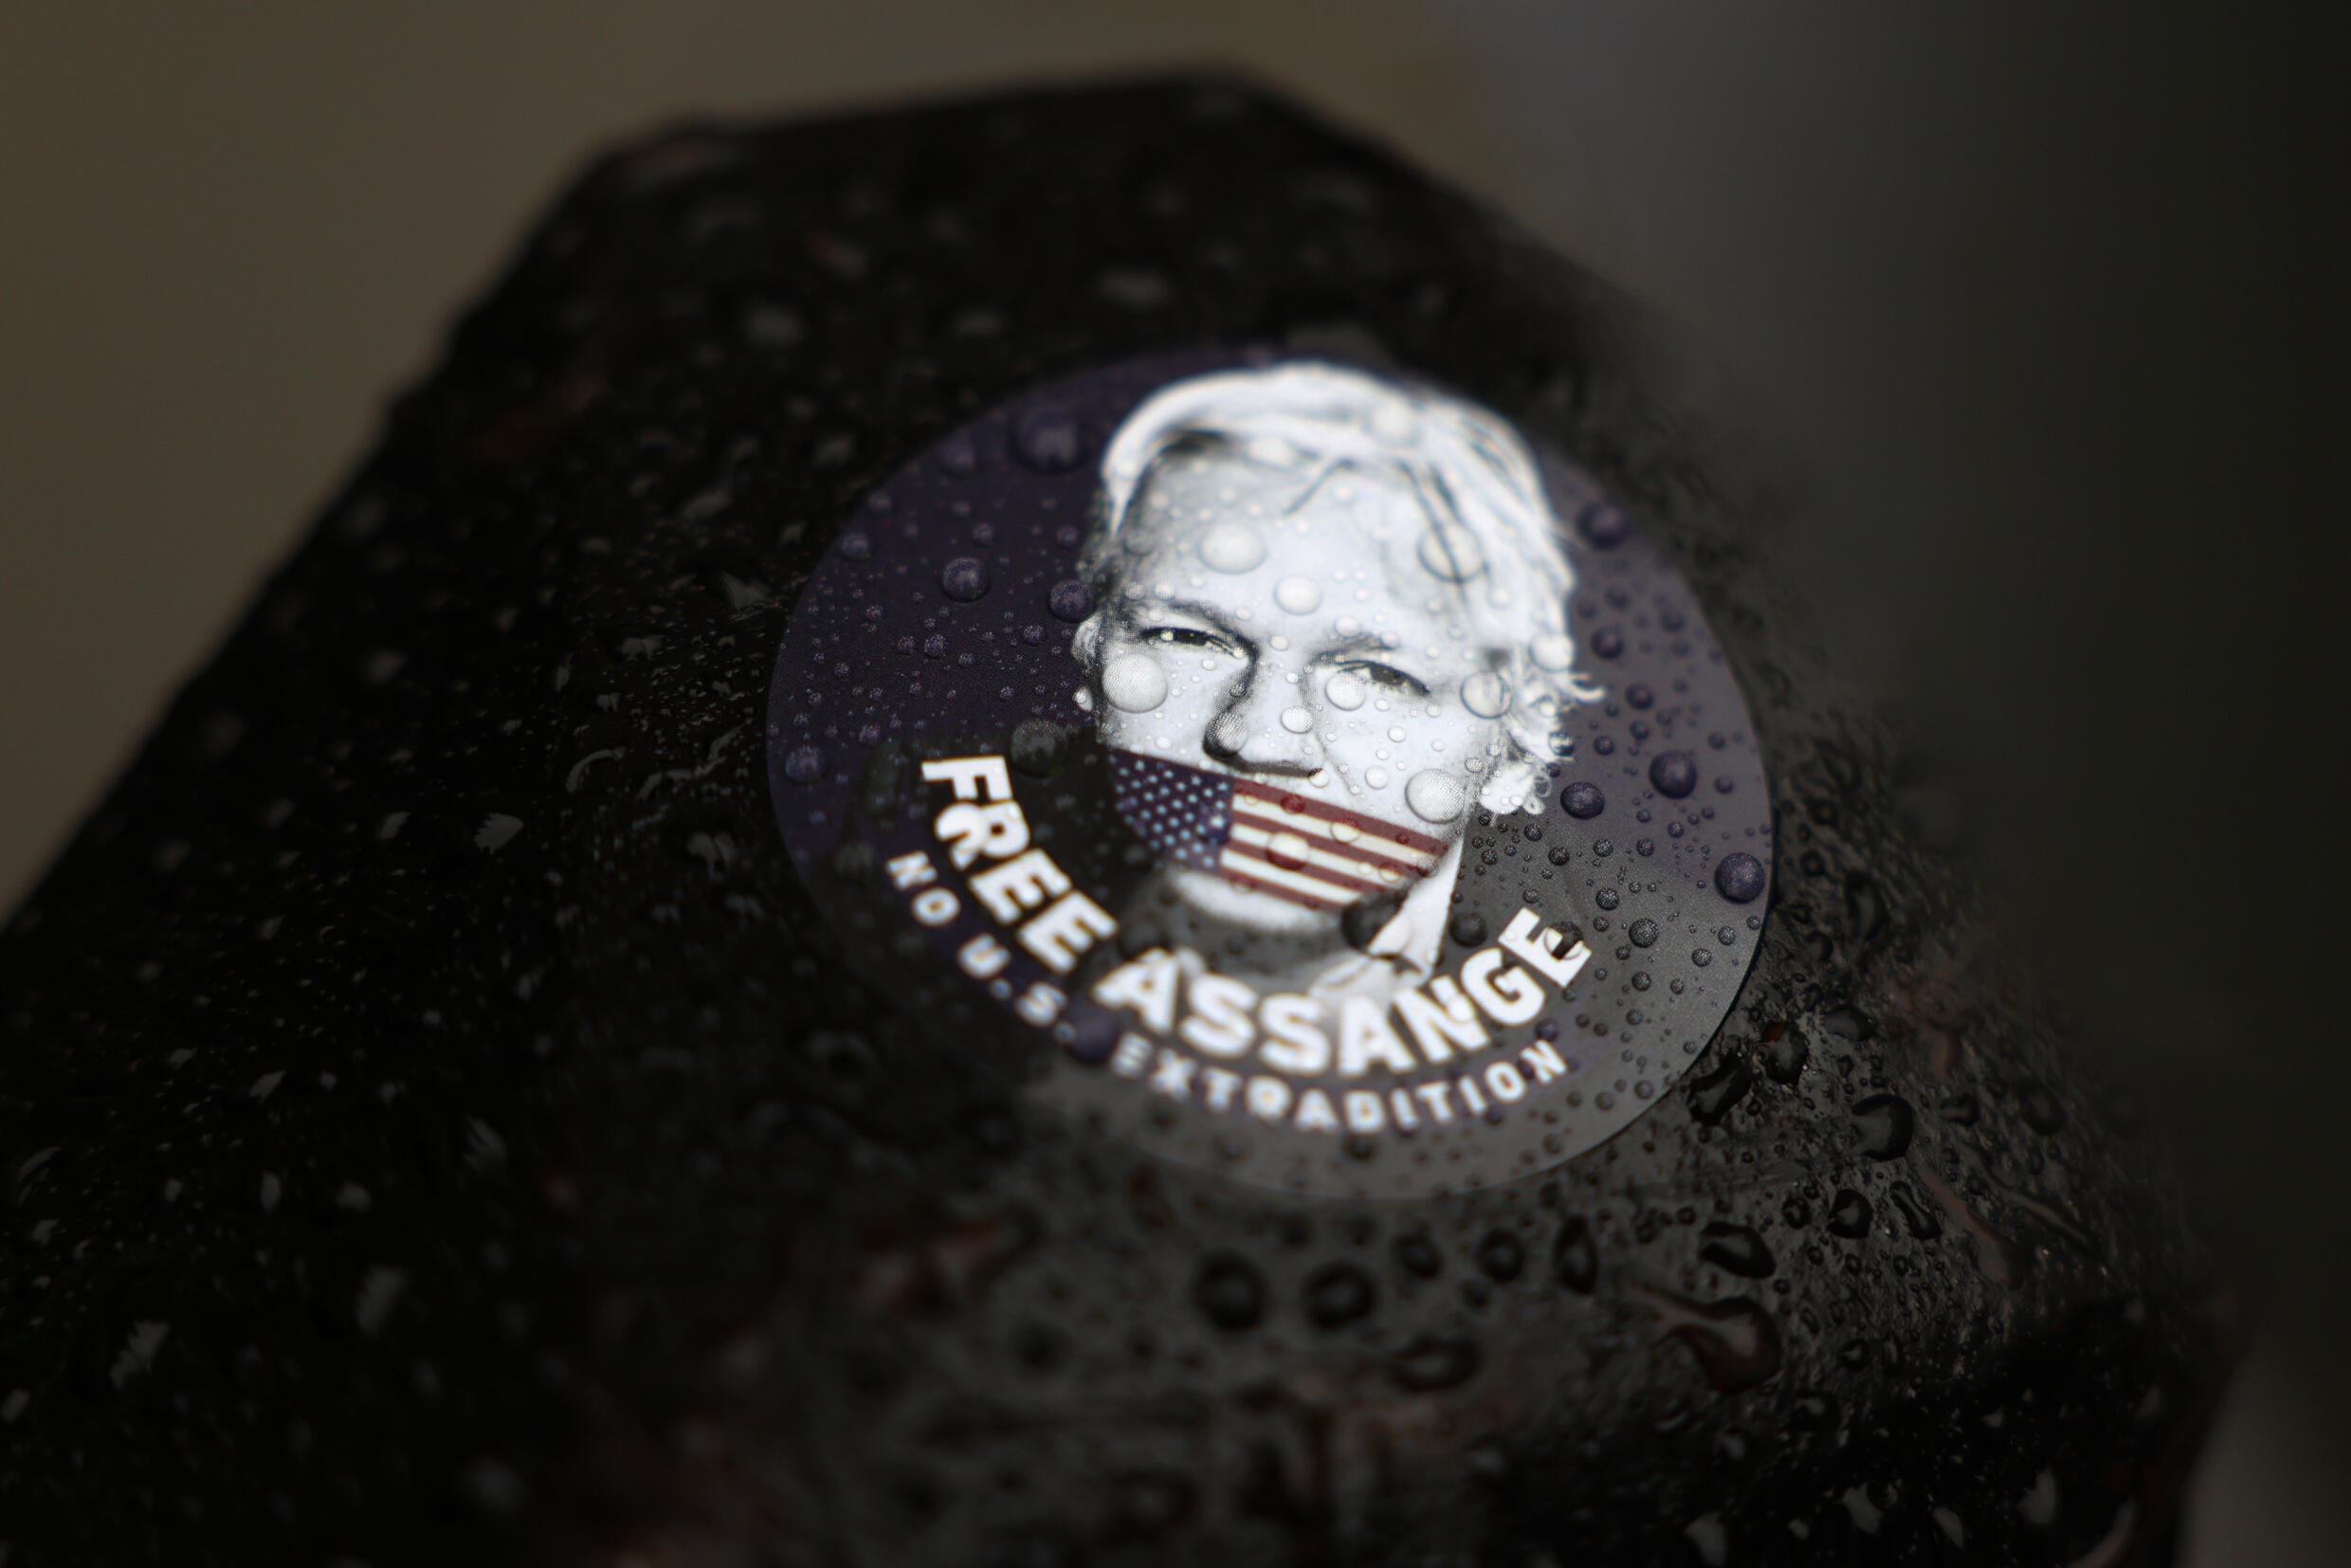 Die Anhörung ist wahrscheinlich Assanges letzte Chance, nach einem jahrelangen Kampf vor britischen Gerichten gegen die Auslieferung zu kämpfen.